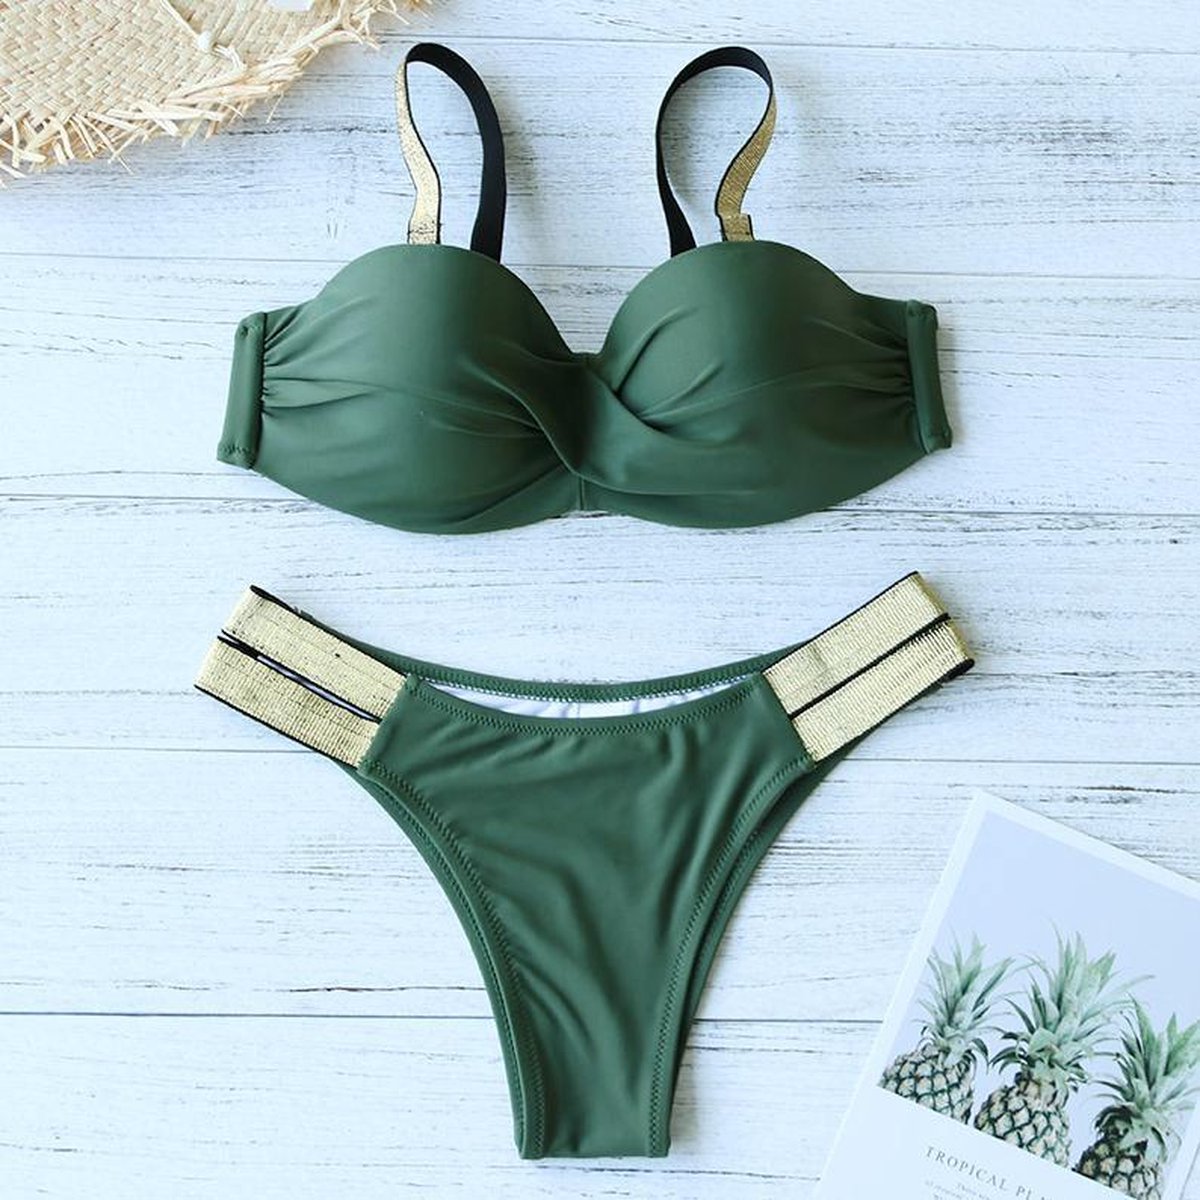 Nodig hebben luister Vlekkeloos Bikini groen met goud - dames badkleding | bol.com